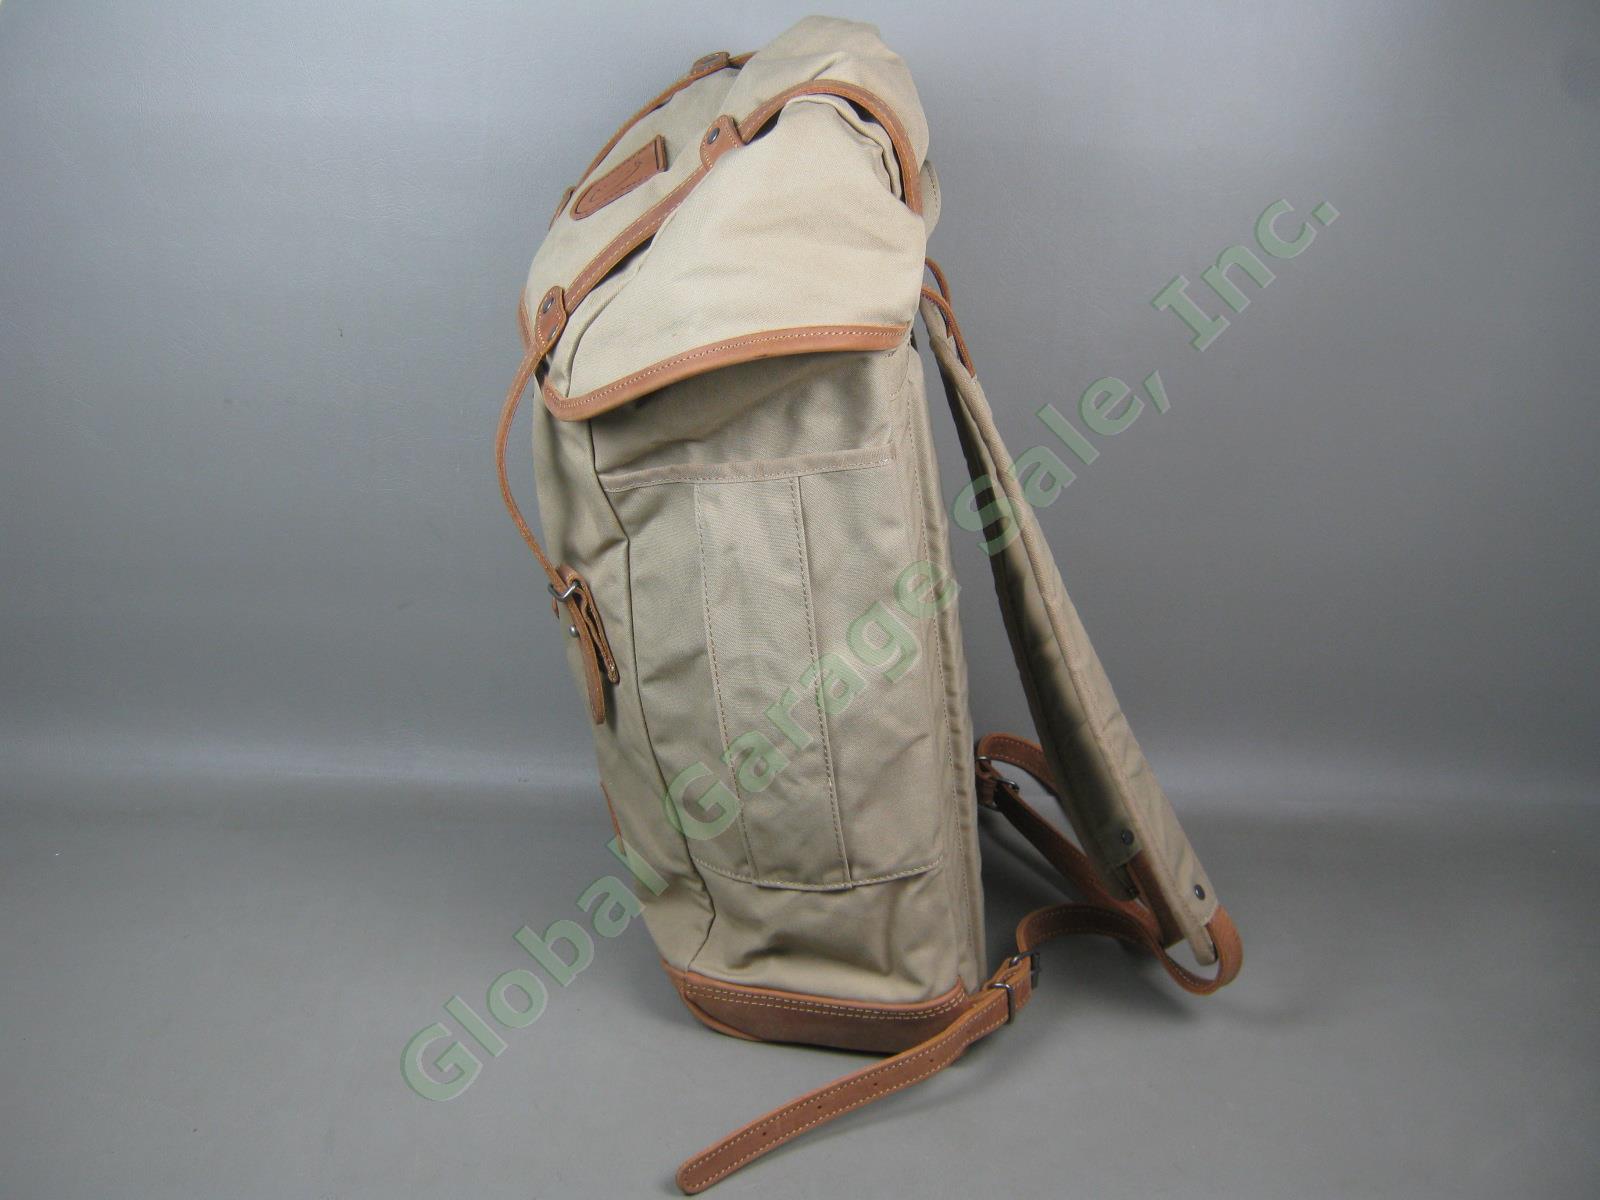 Fjallraven Rucksack No 21 Large Daypack Backpack 24206 Sand Color G-1000 VG COND 2